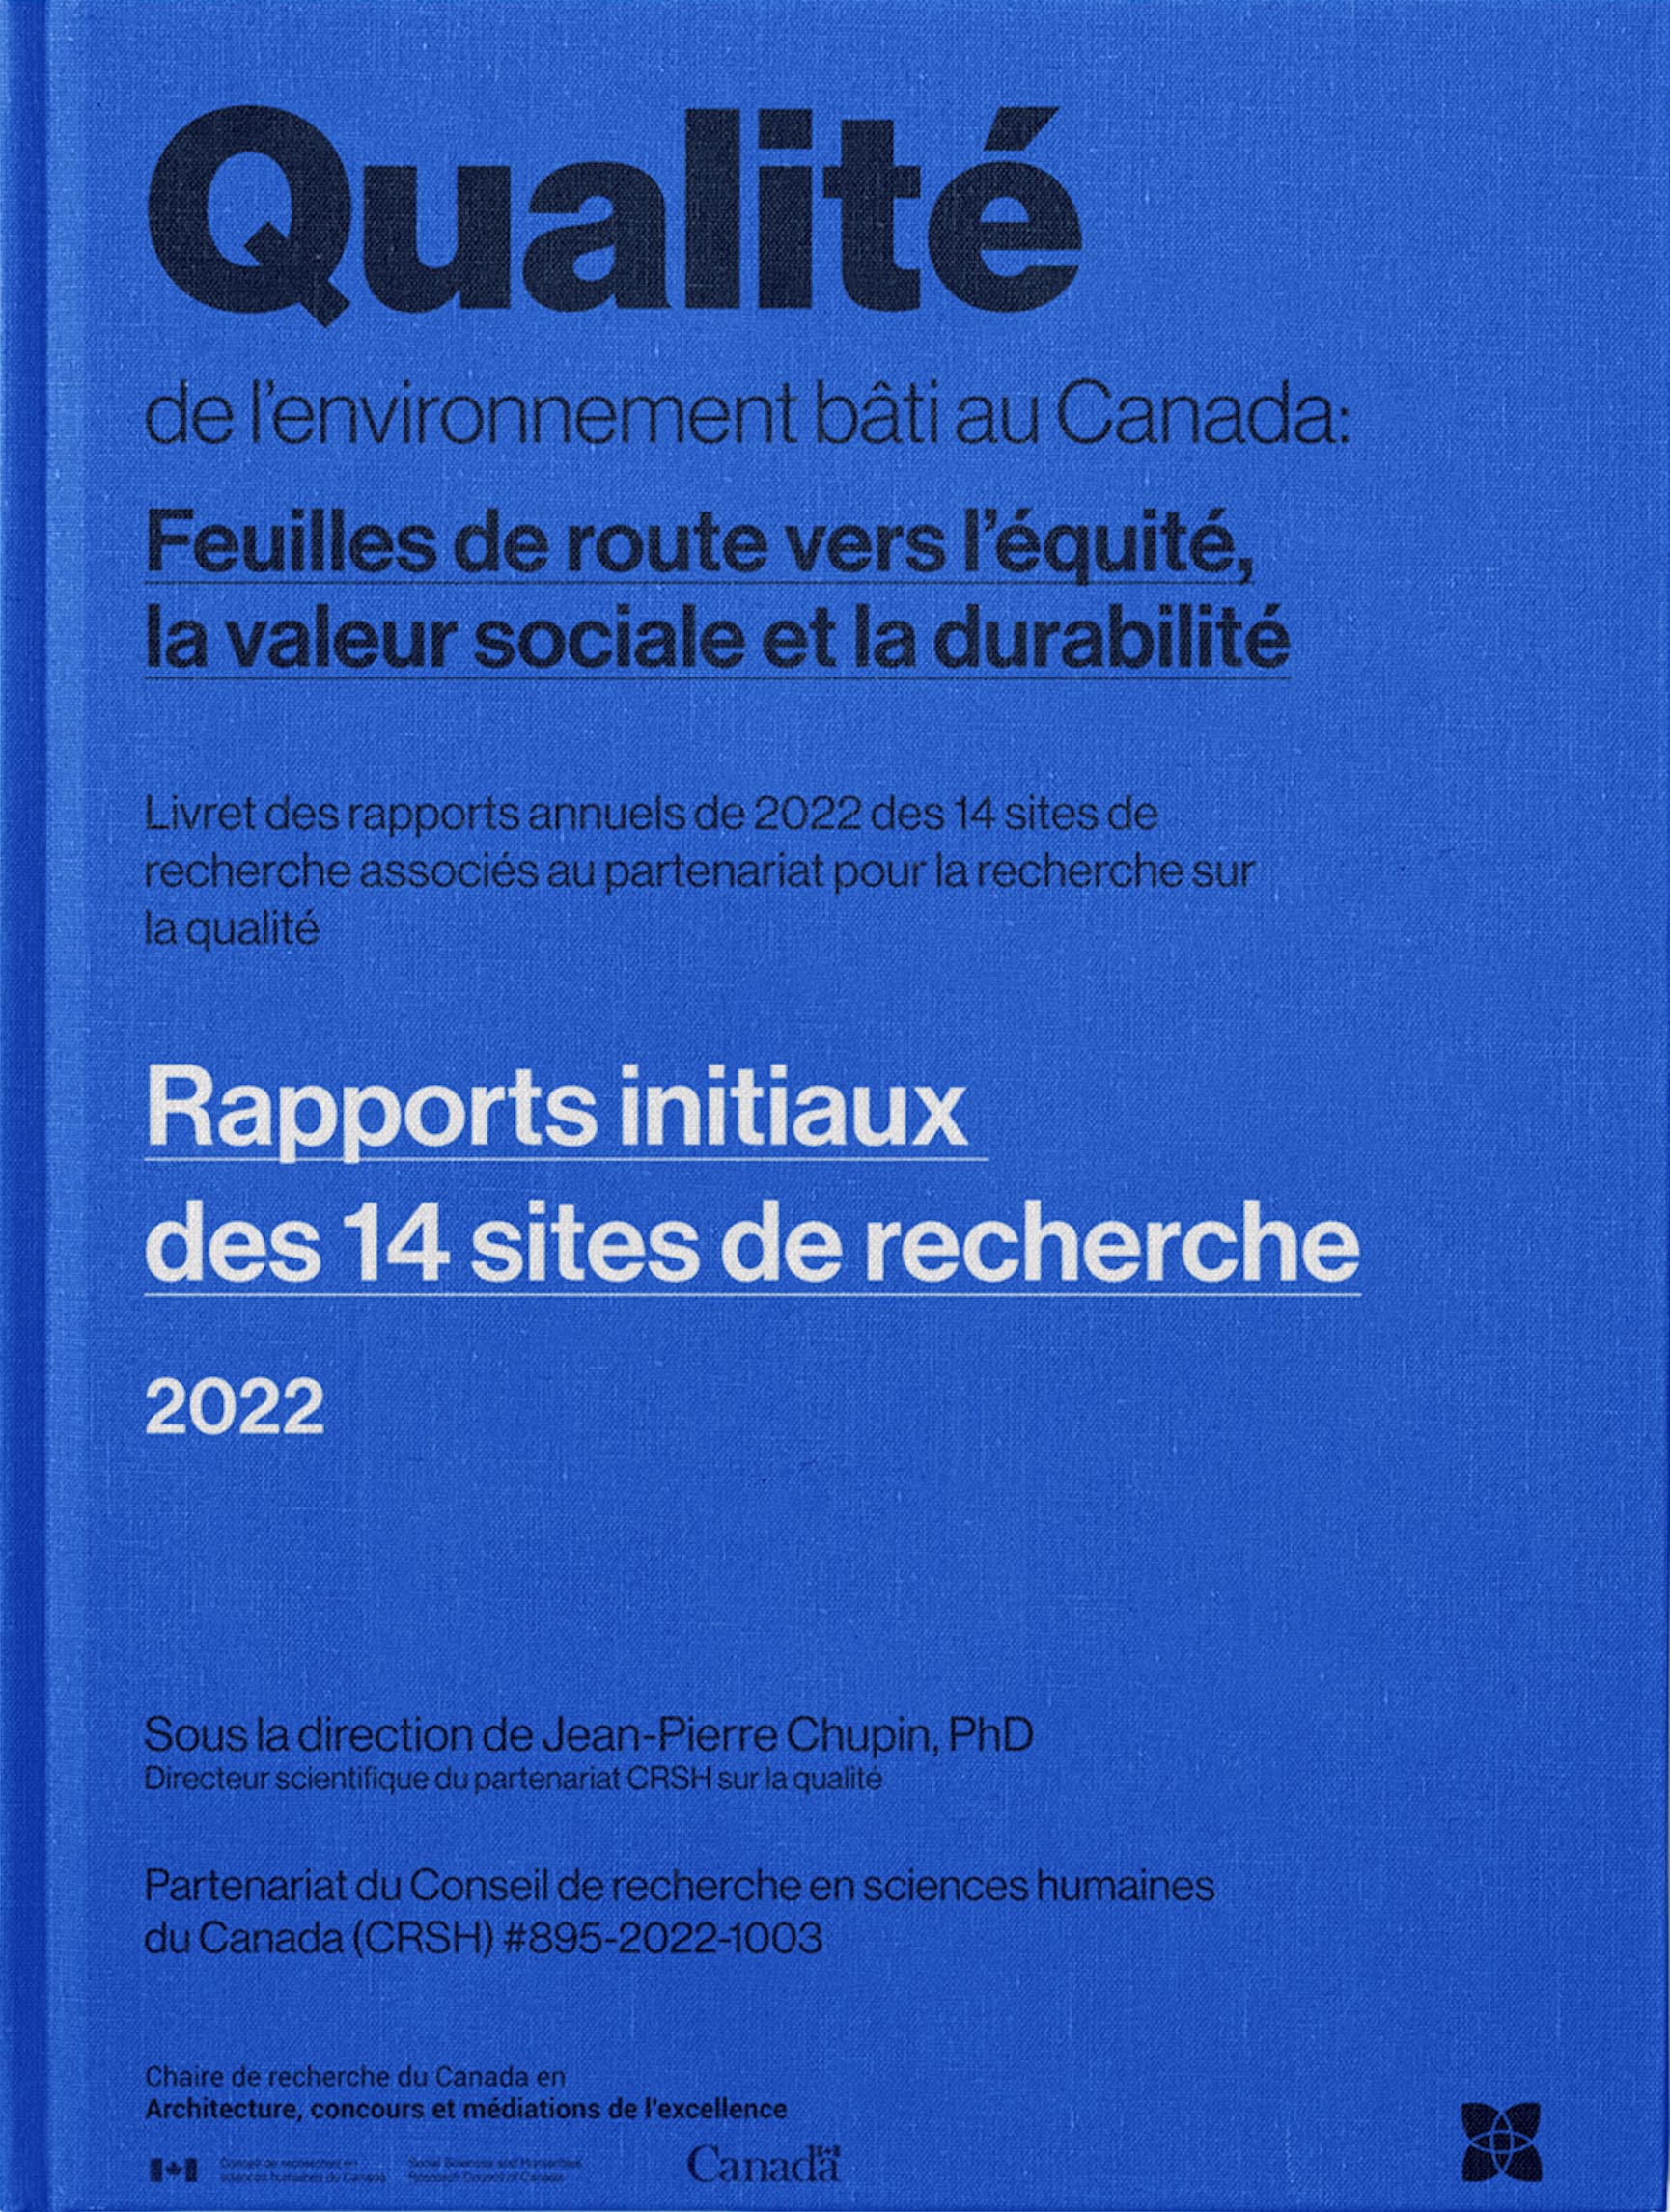 Rapports initiaux des 14 sites de recherche. Partenariat de recherche CRSH (#895-2022-1003). Sous la direction de Jean-Pierre Chupin, 2022, Université de Montréal. 58 pages.